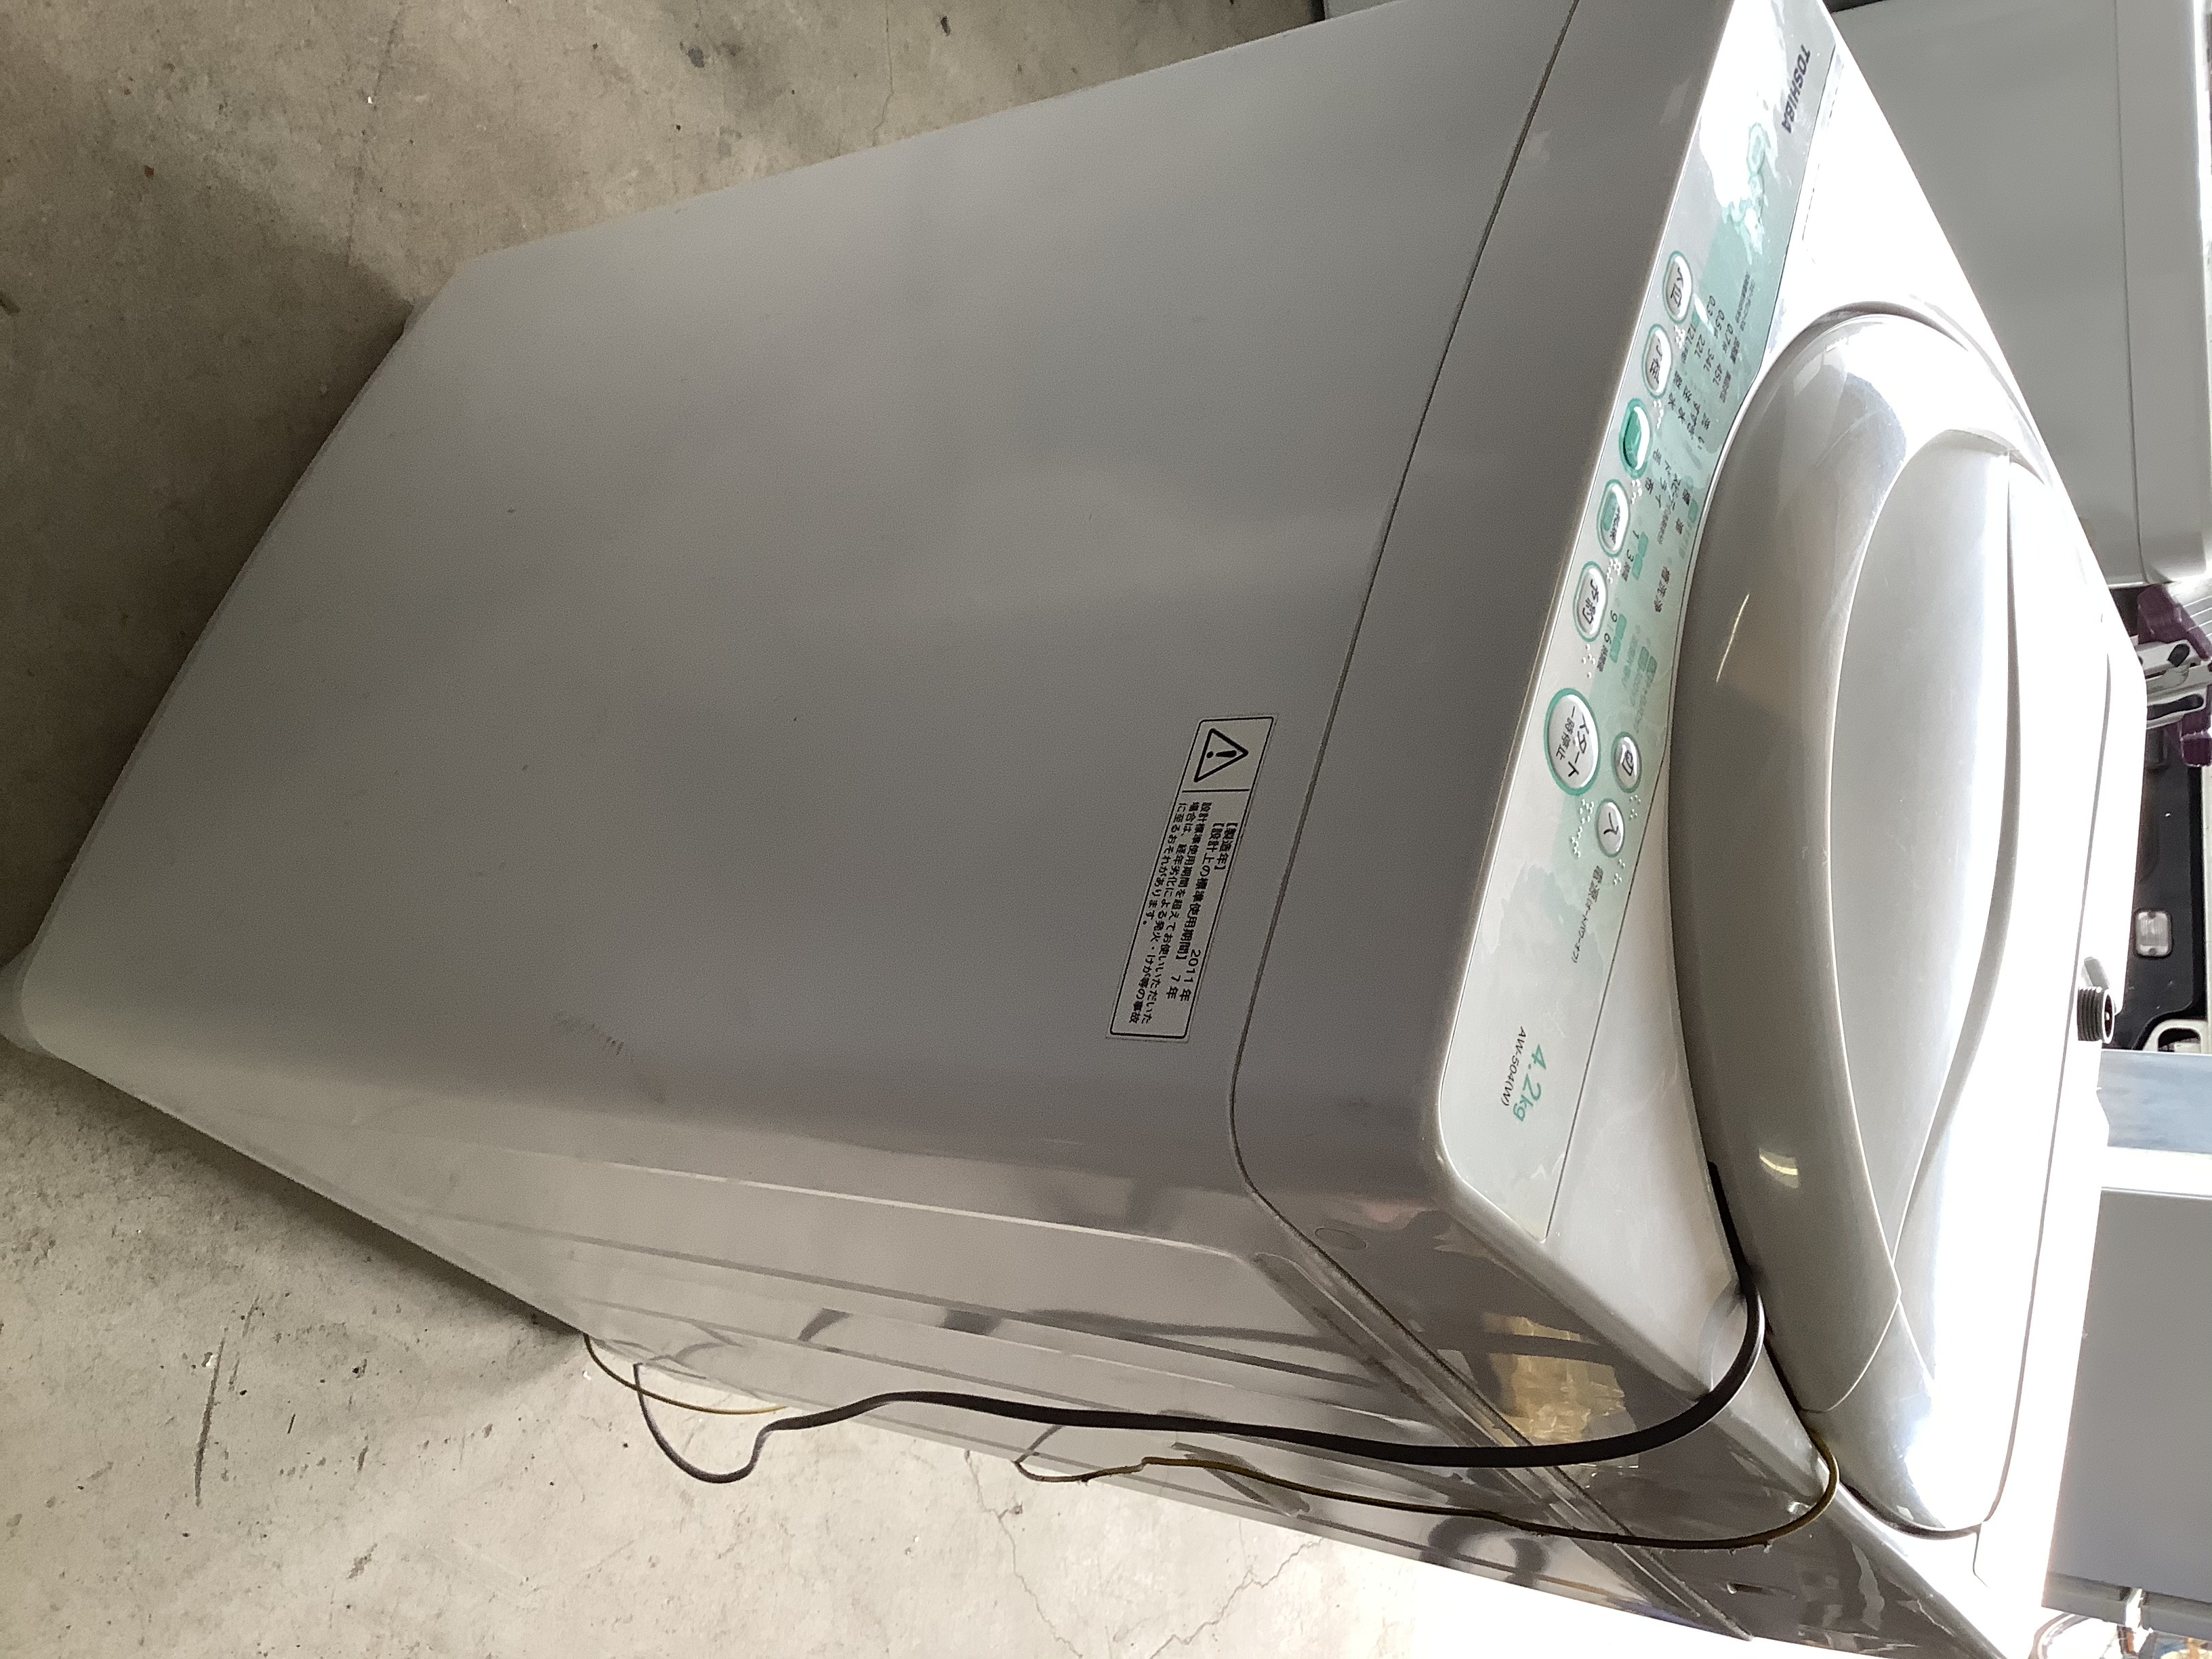 倉敷市内で回収した洗濯機